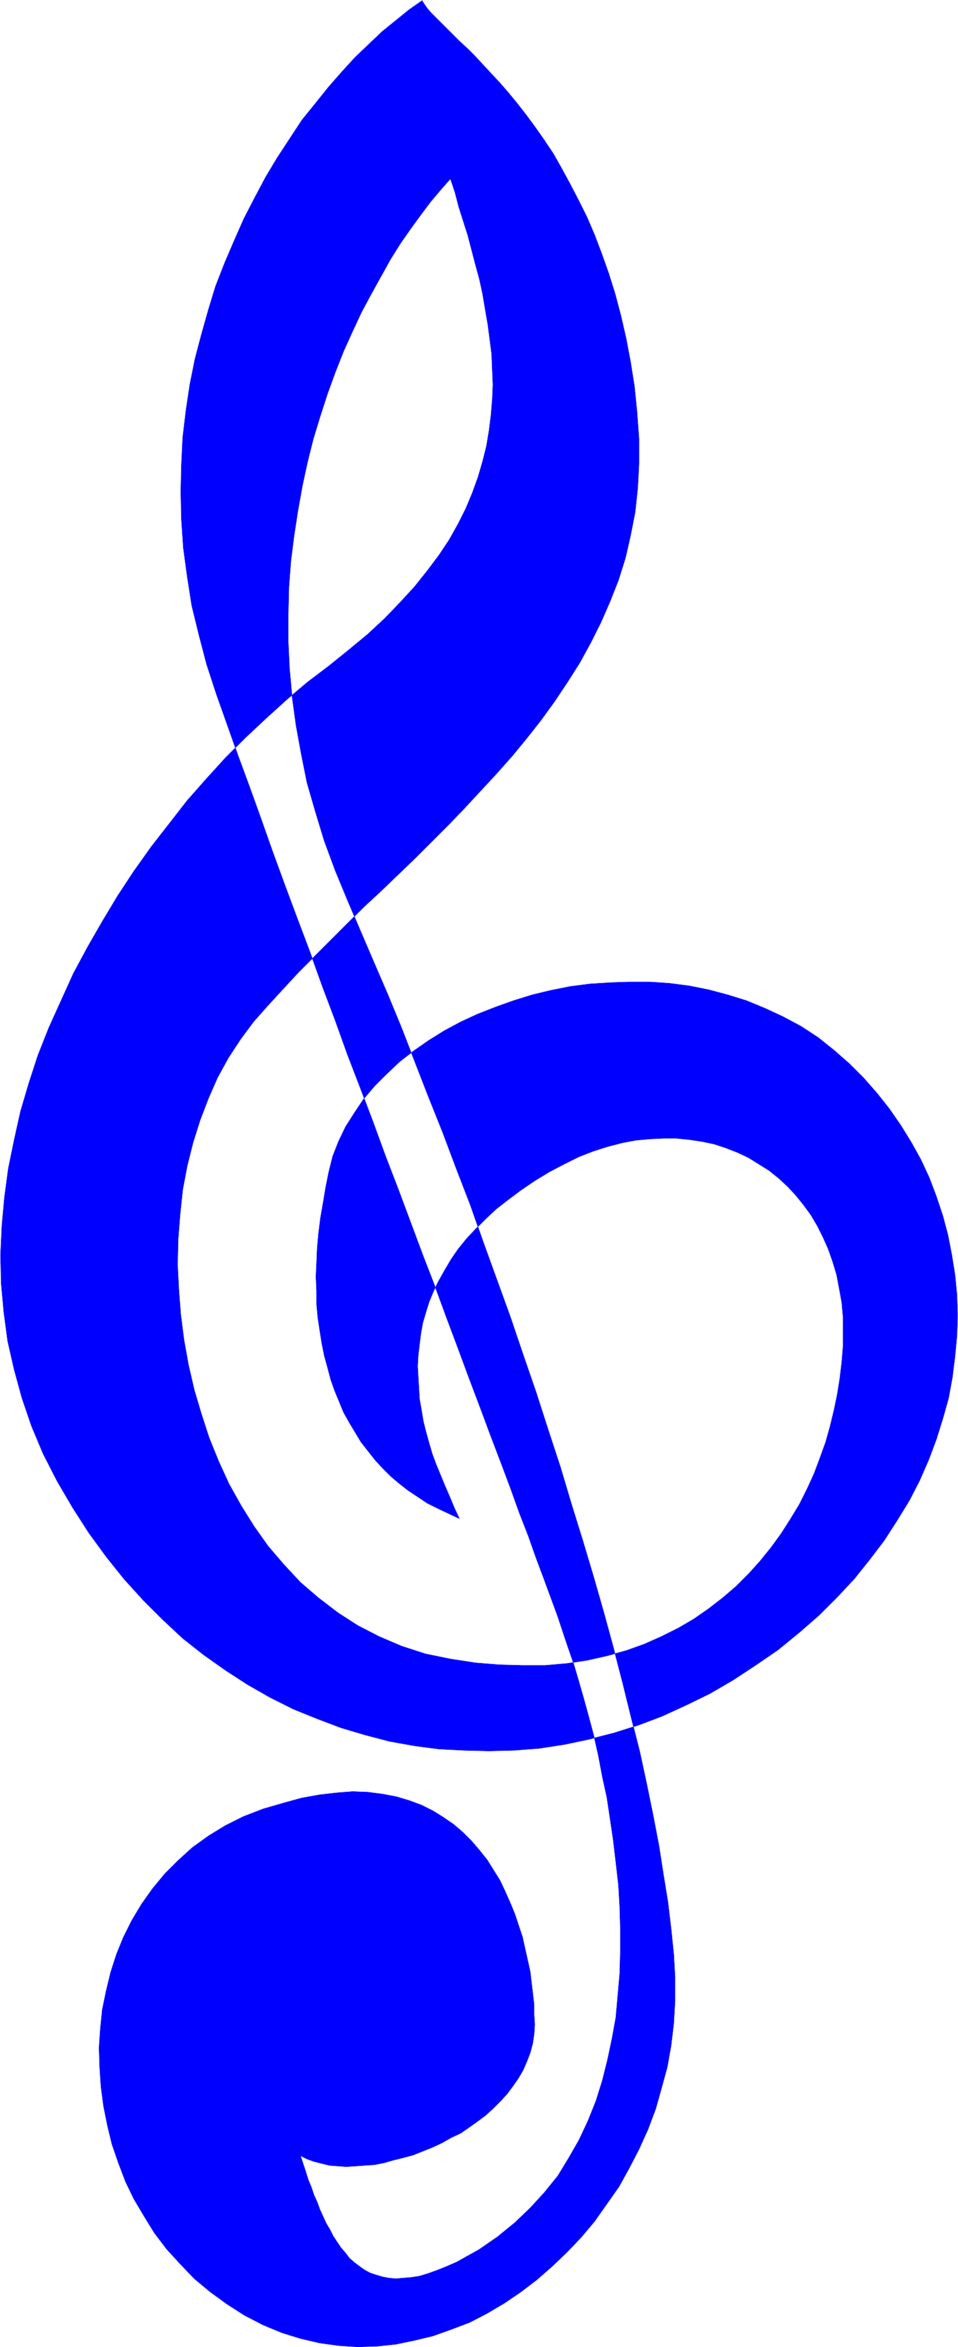 blue dollar icon. dollar symbol png. dollar tree